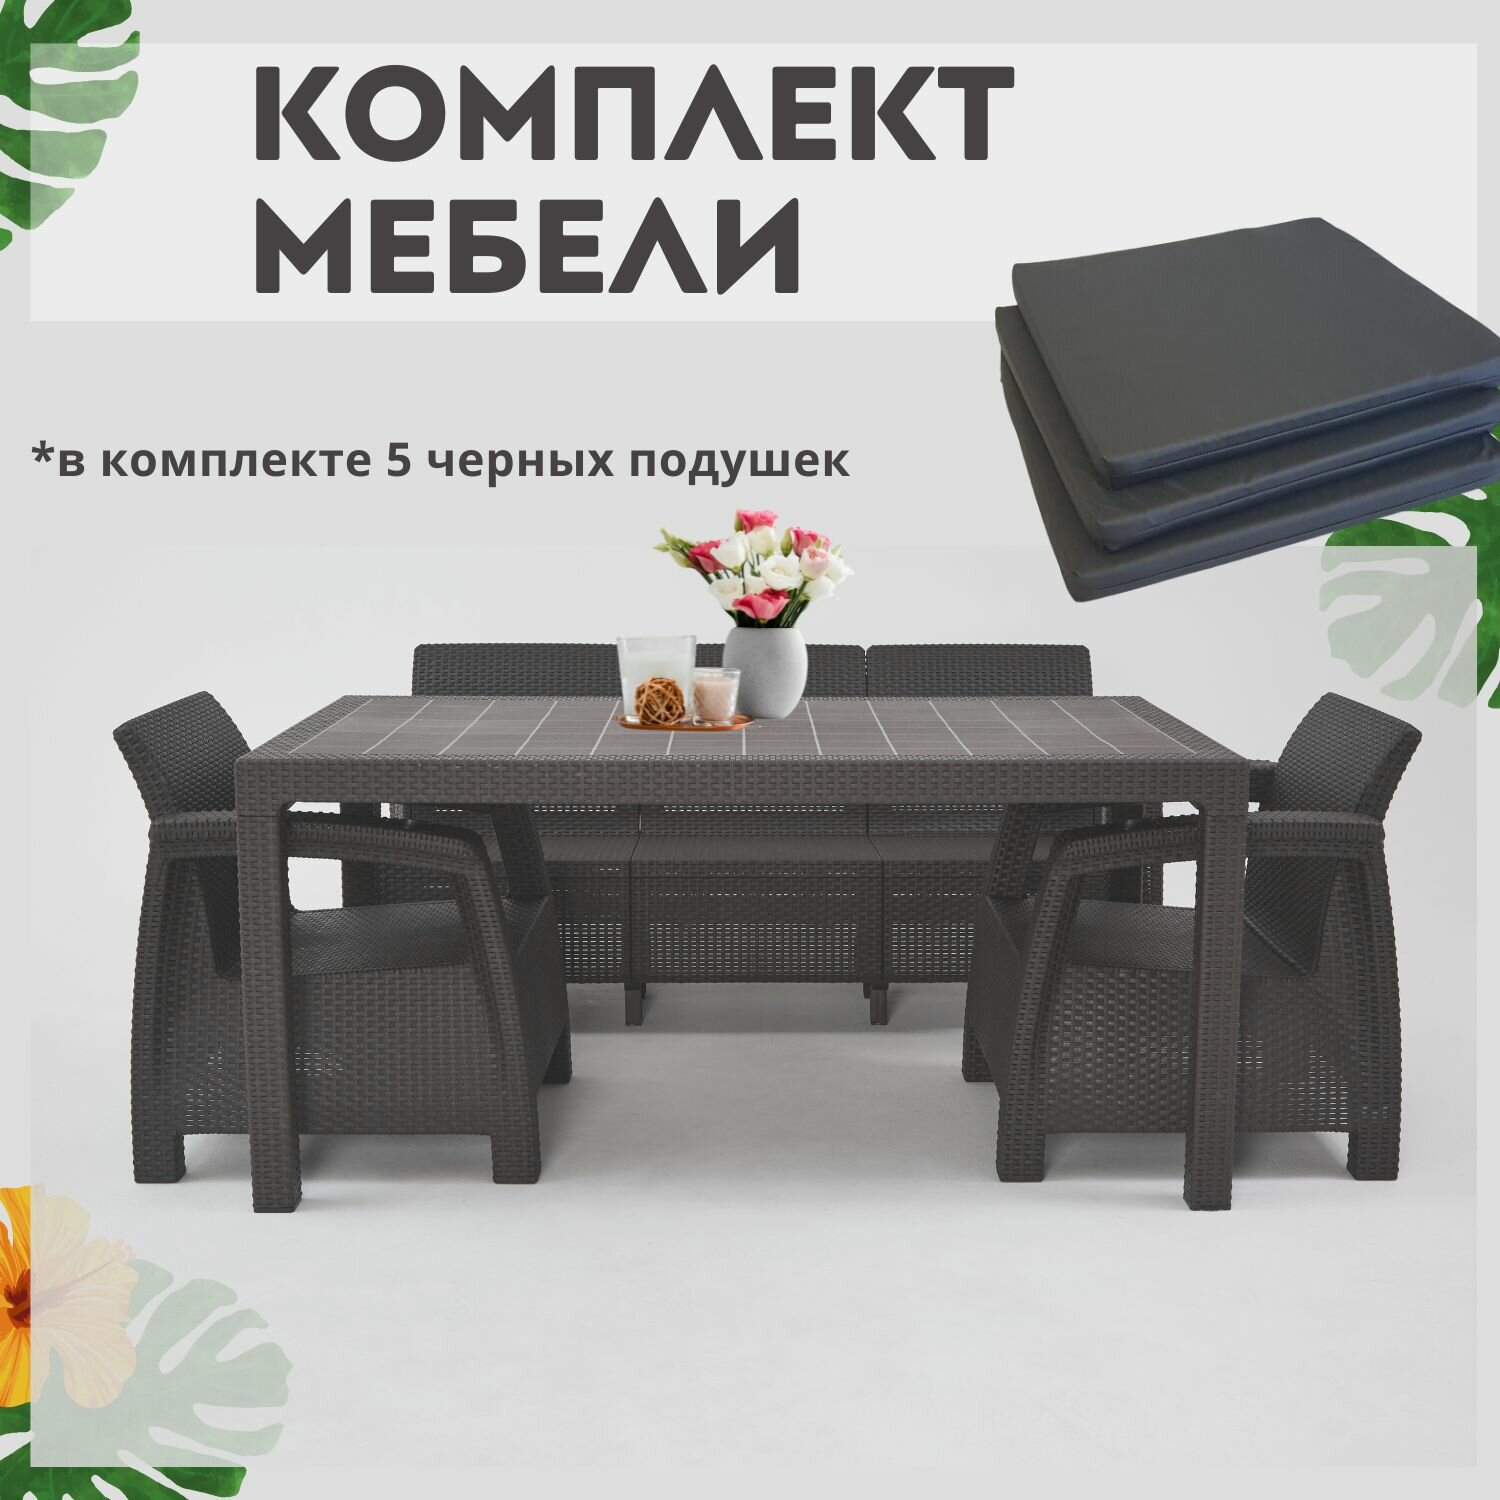 Комплект садовой мебели из ротанга Set 3+1+1+обеденный стол 160х95, с комплектом черных подушек